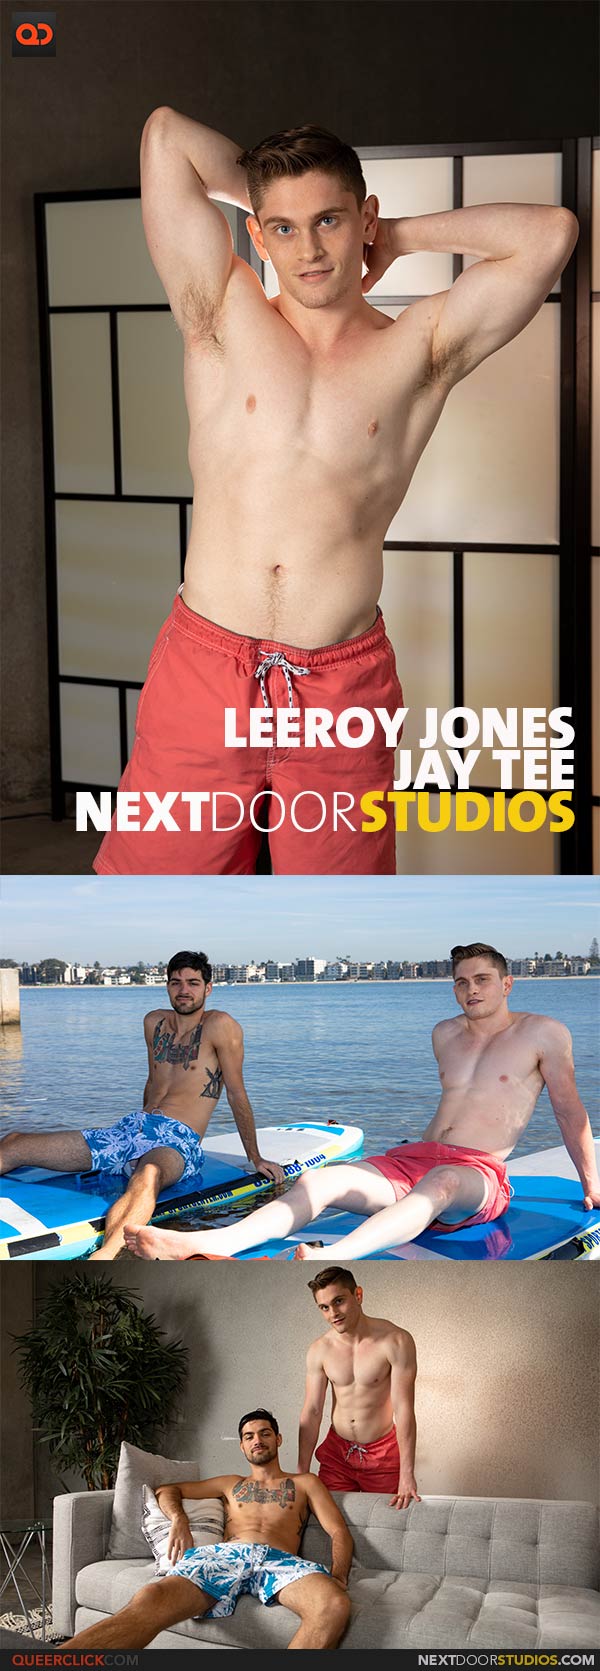 NextDoorStudios: Jay Tee and Leeroy Jones